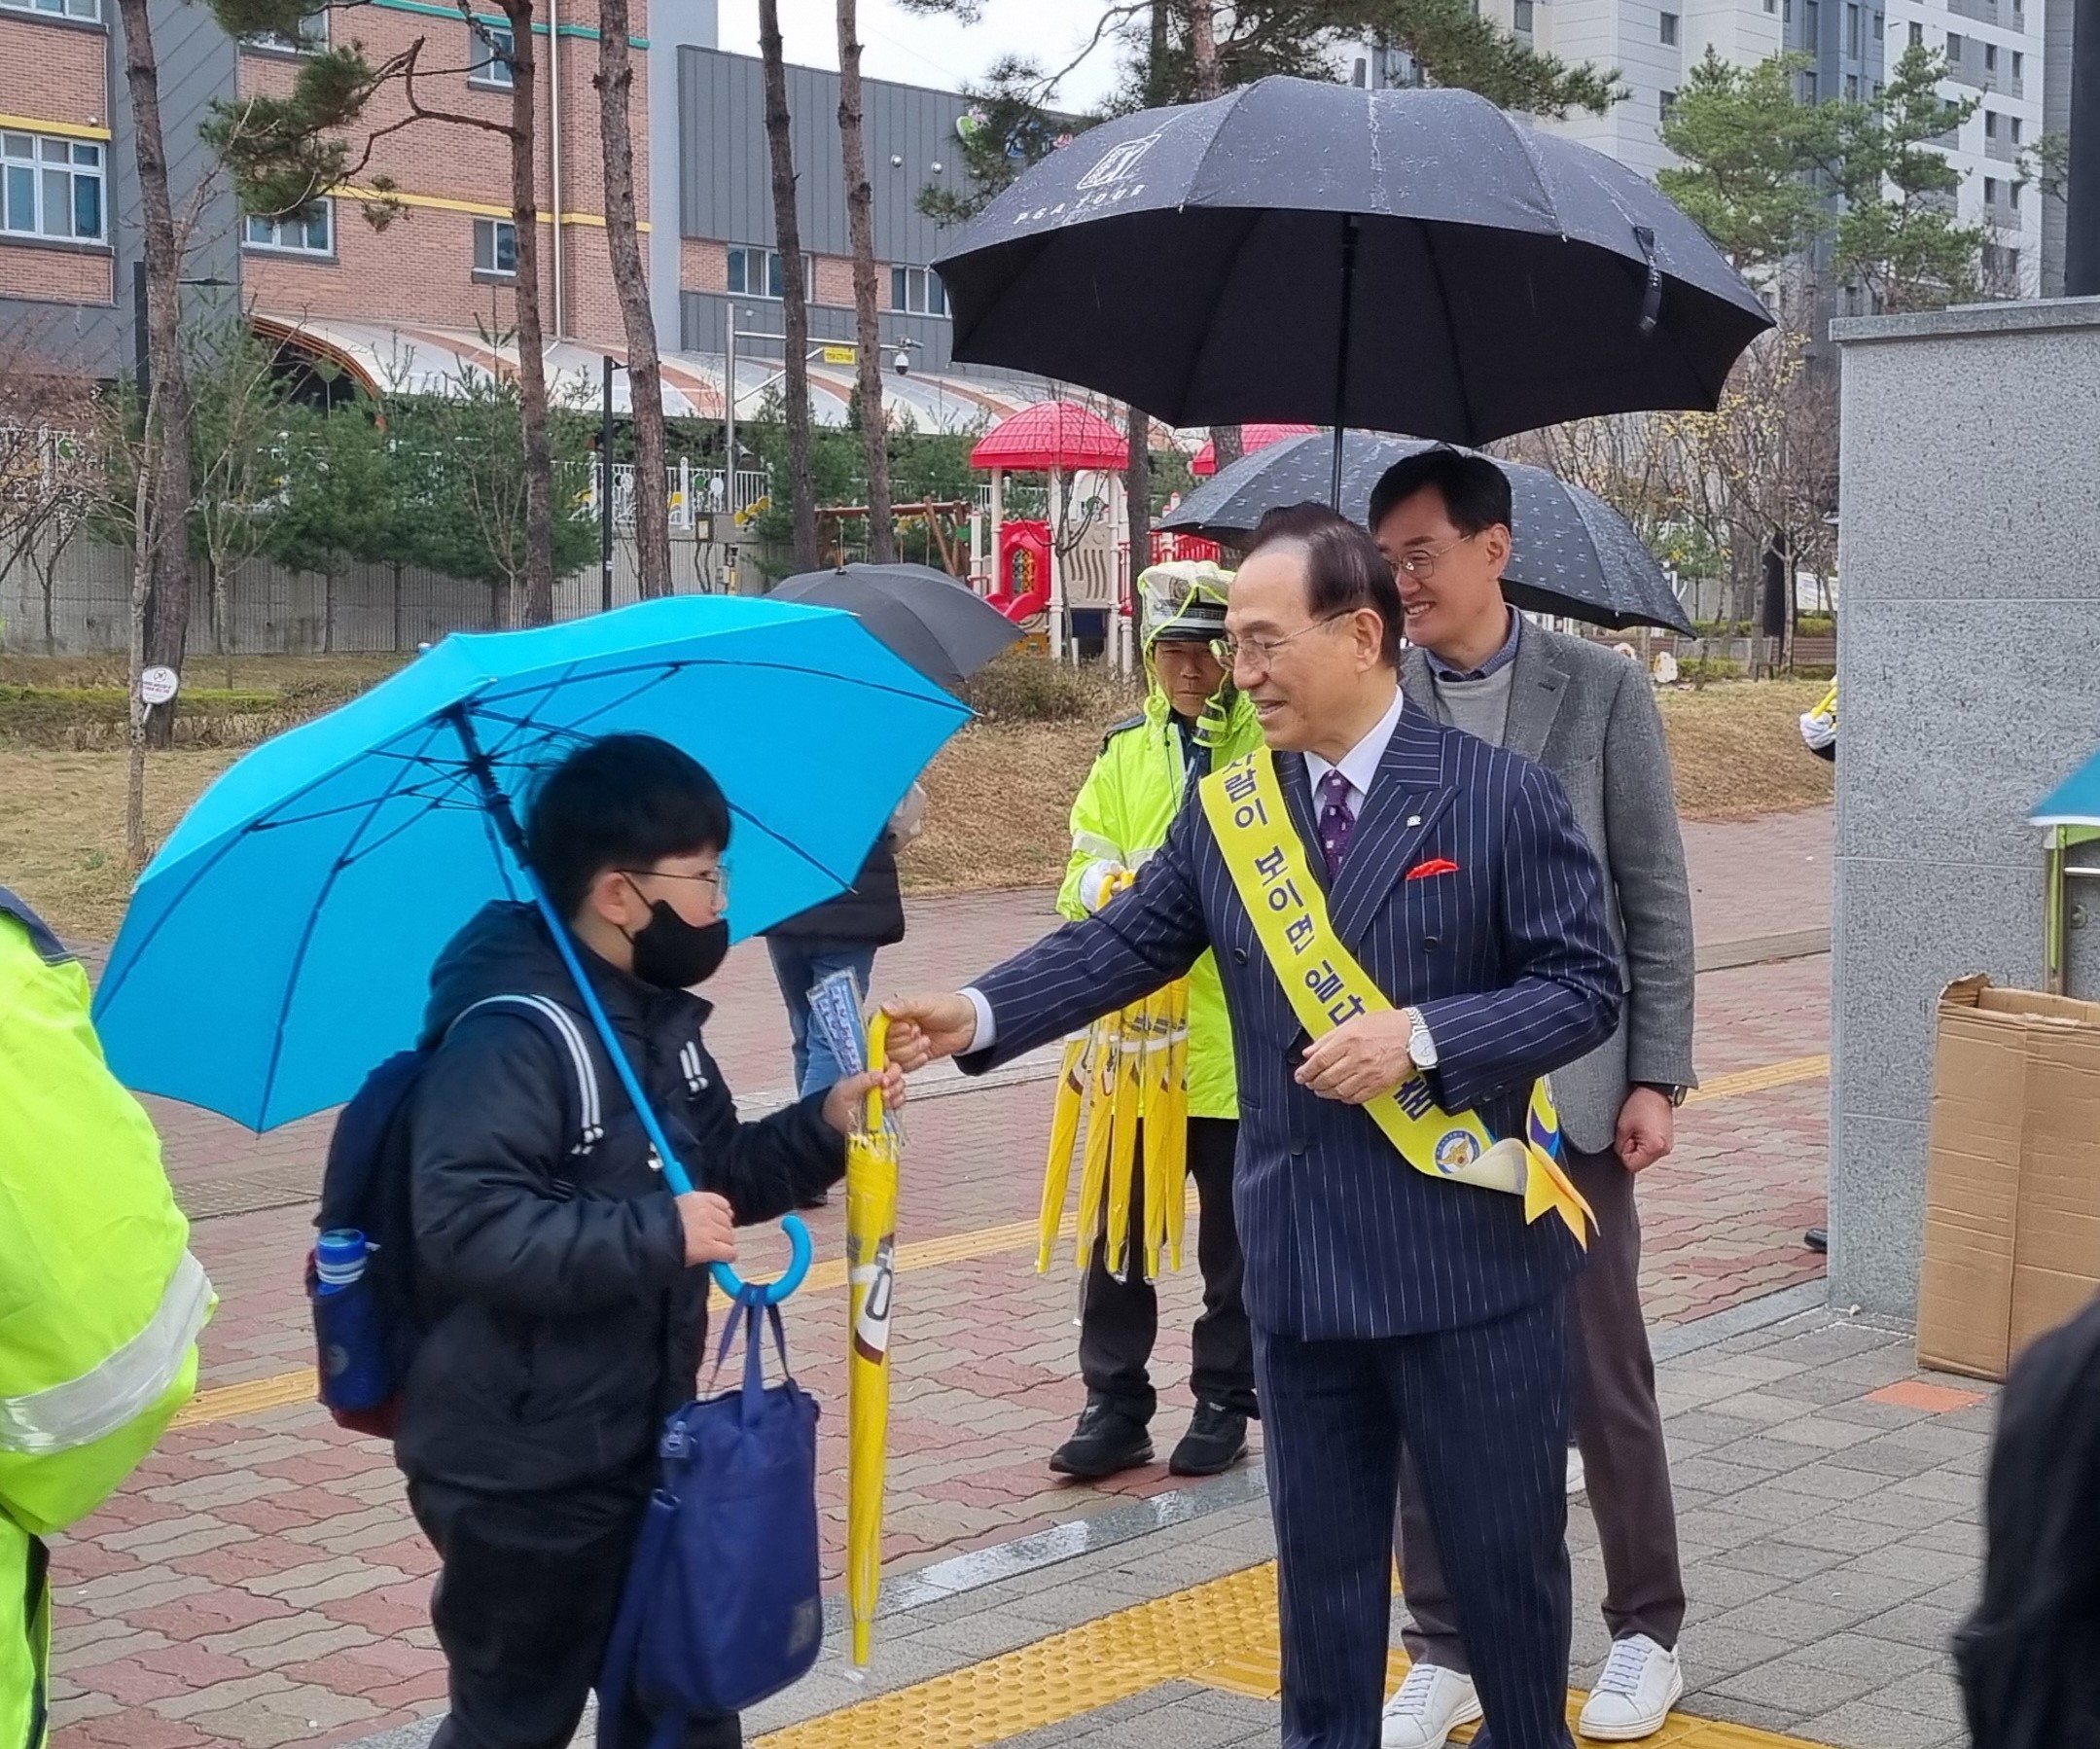 천안시가 28일 천안가람초등학교 등굣길 주변에서 서북경찰서, 천안교육지원청, 교통봉사단체 등과 함께
스쿨존 교통안전 캠페인을 진행하고 있다.